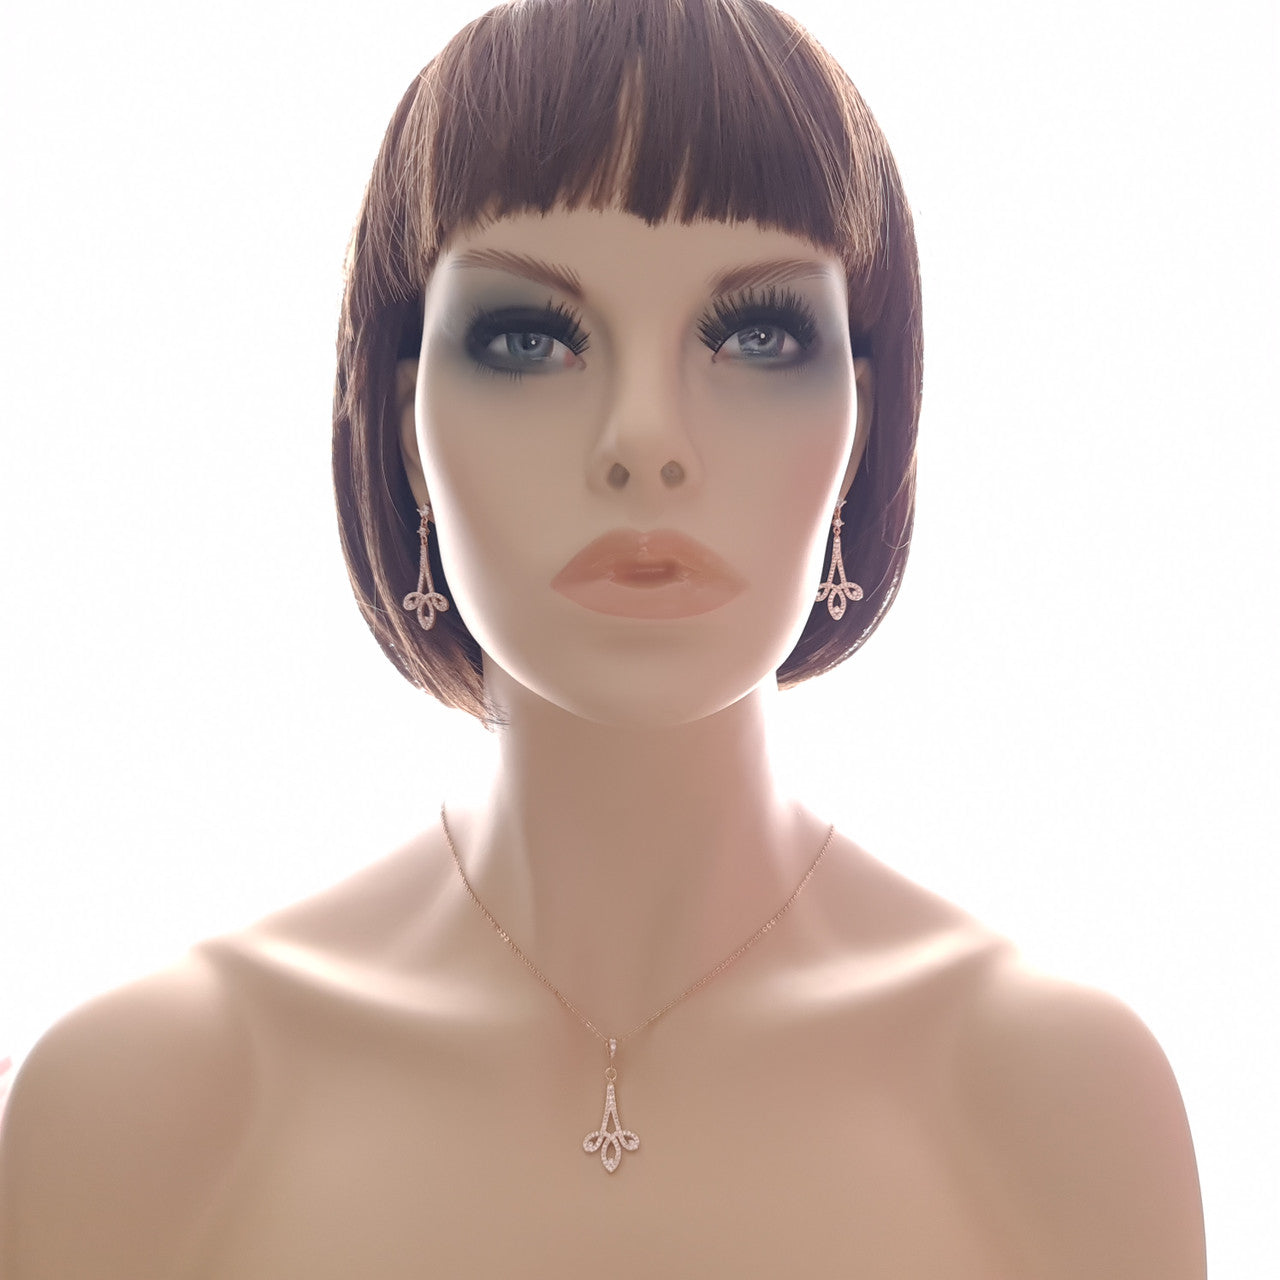 Modern Bridal Jewellery Set Earrings & Necklace-Allison